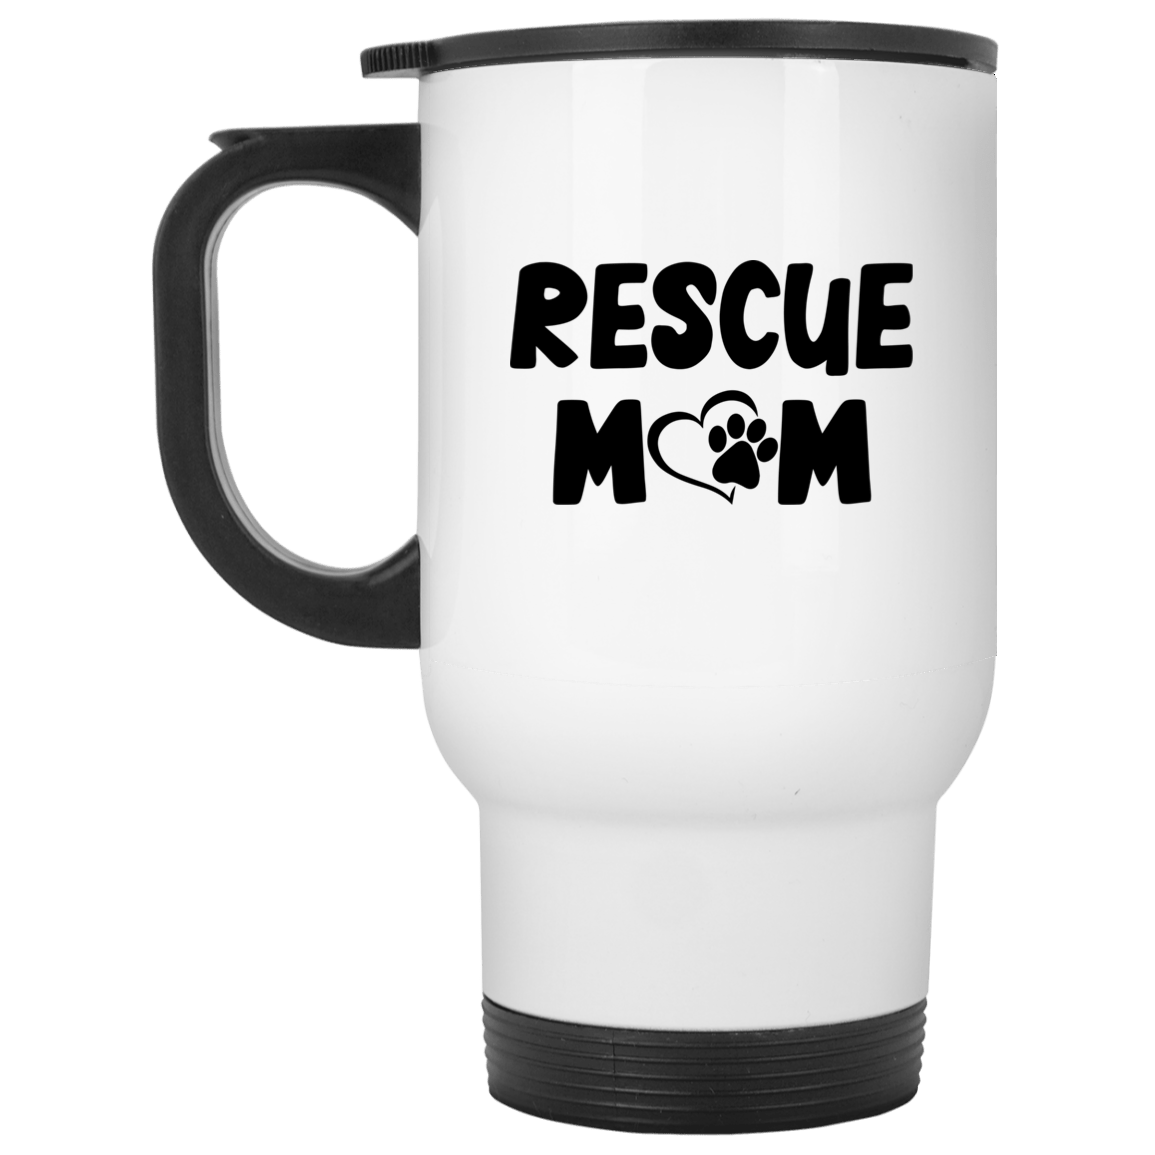 Rescue Mom - Mugs.